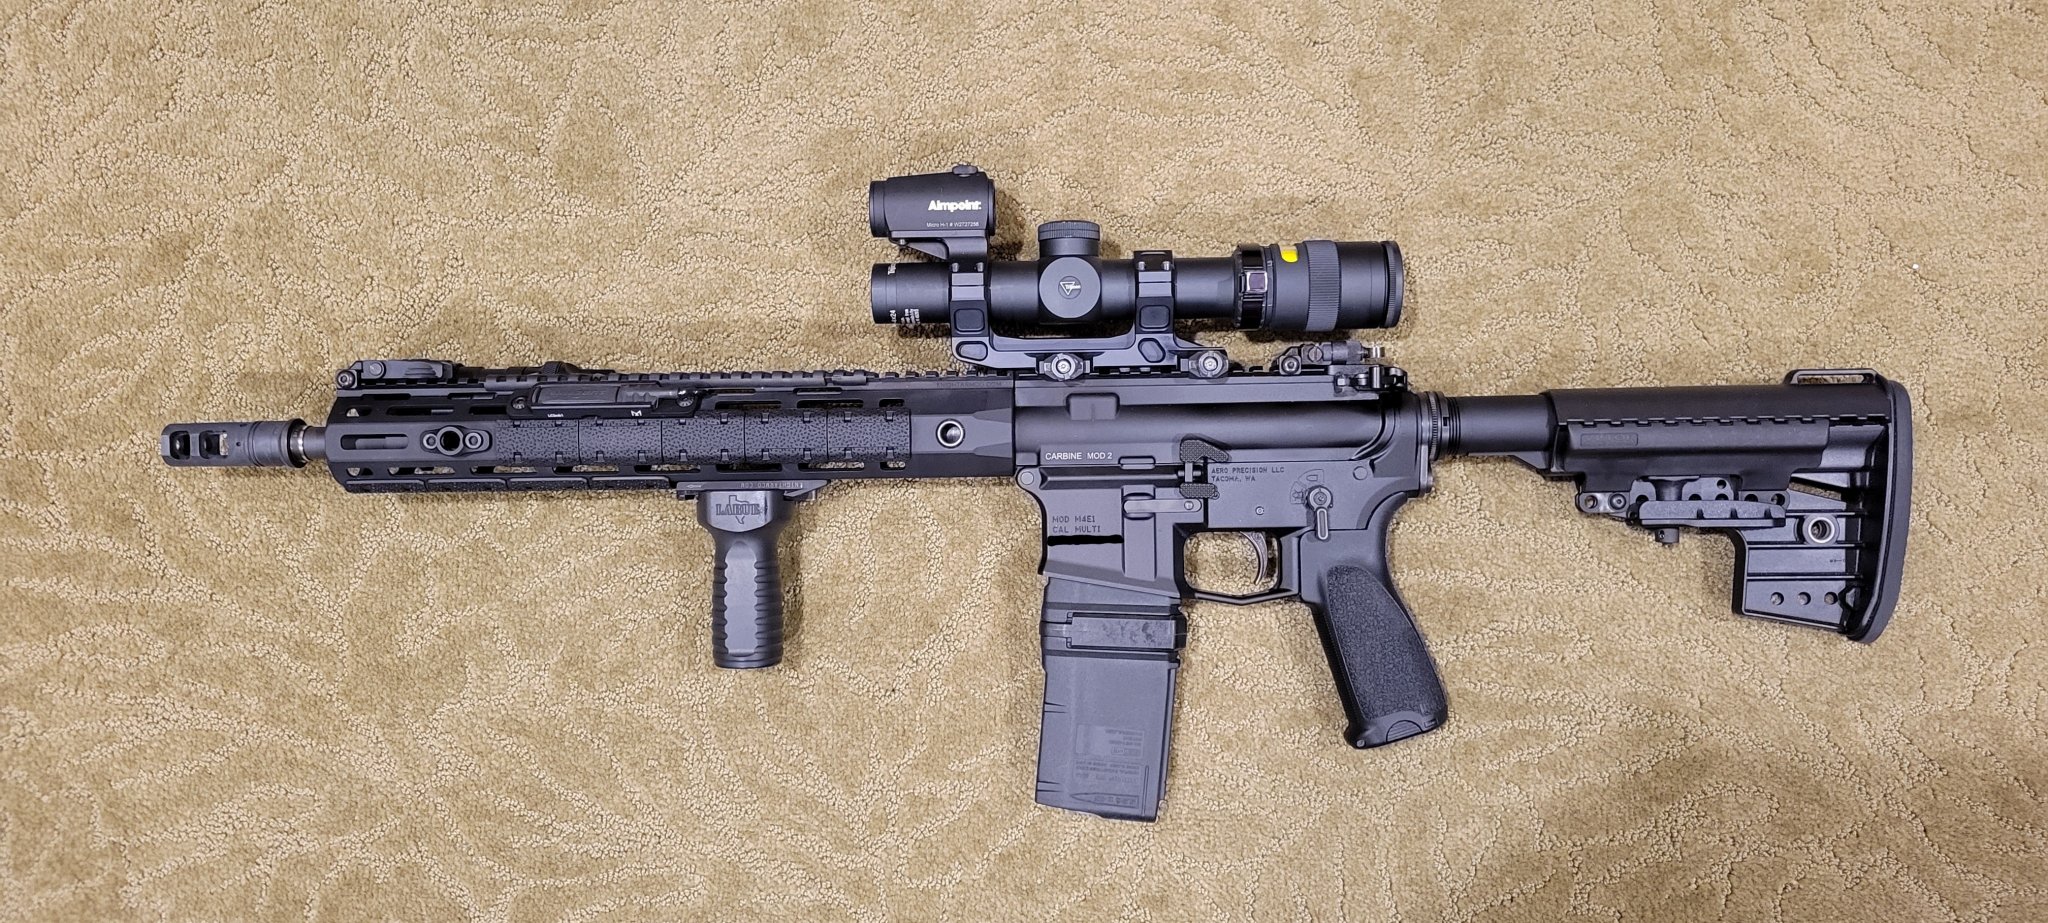 Optic for general purpose 5.56 | Sniper's Hide Forum